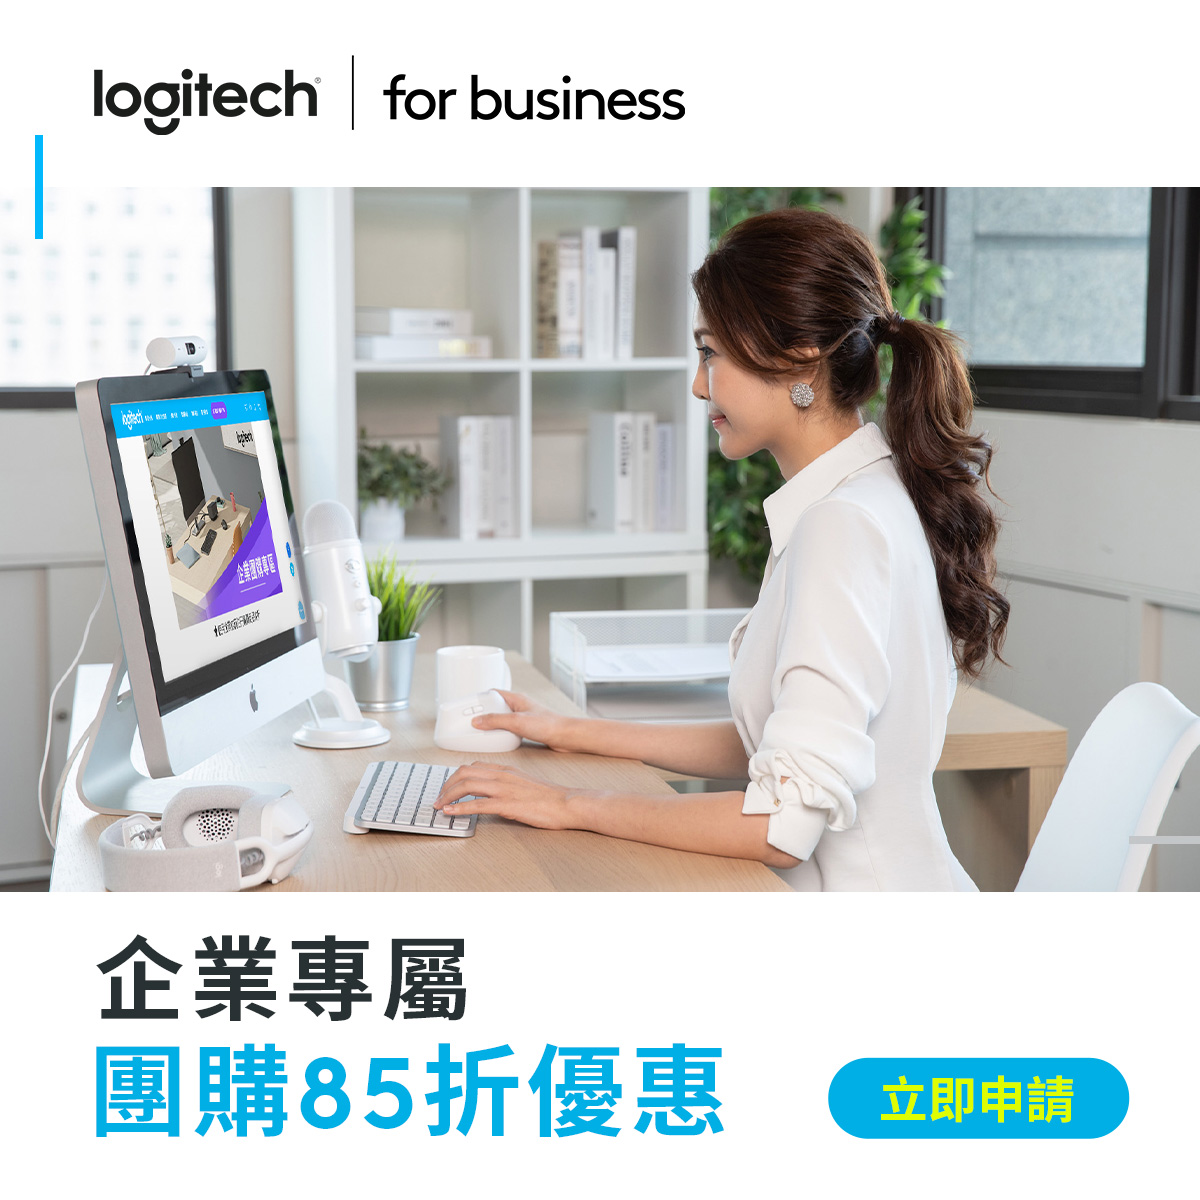 Logitech for Business 提供企業客戶專屬優惠，除了最暢銷的 MX 高階商務系列、主流系列的鍵鼠組合外，也有針對商務會議所設計的耳機、攝影機等個人協作方案，助您事半功倍，搭上混合辦公浪潮！